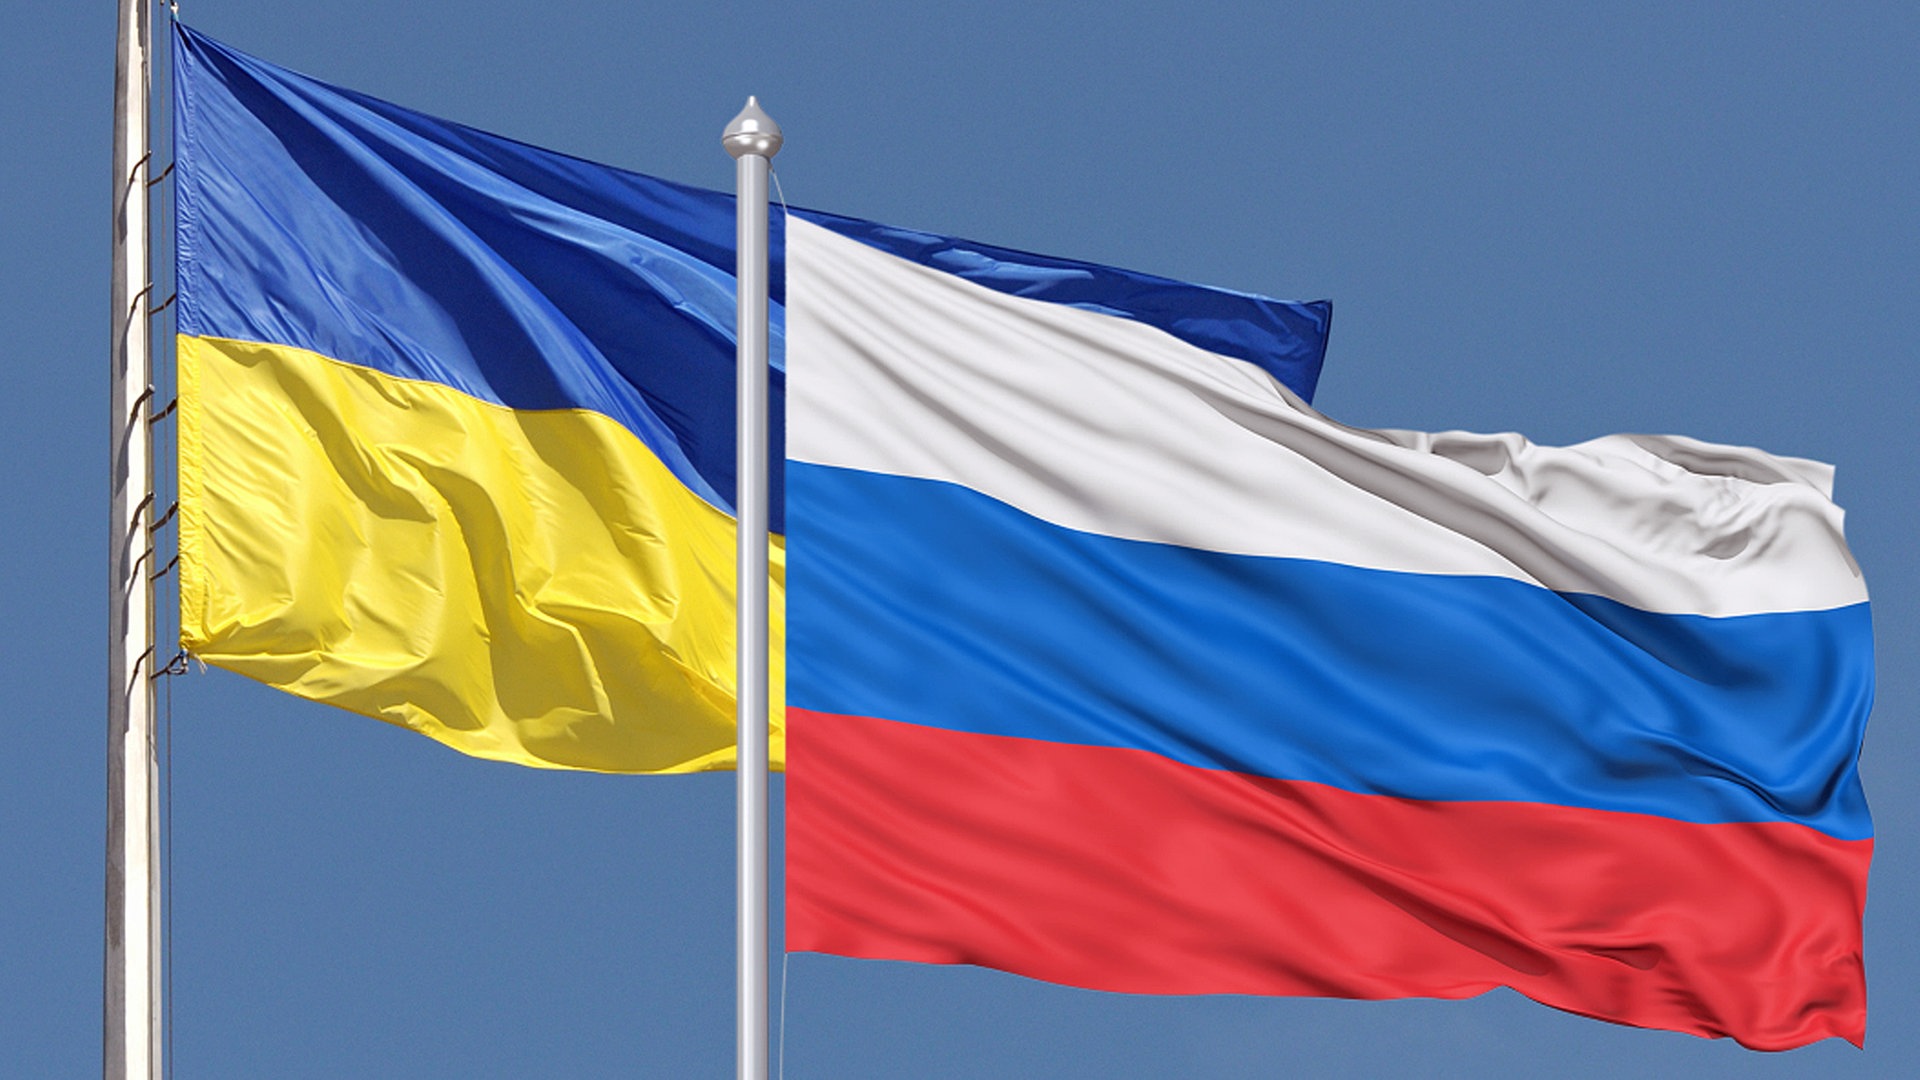 Beckum/NRW: Russische Flagge im Lkw - Ukrainer geht auf A2 auf Kollegen los